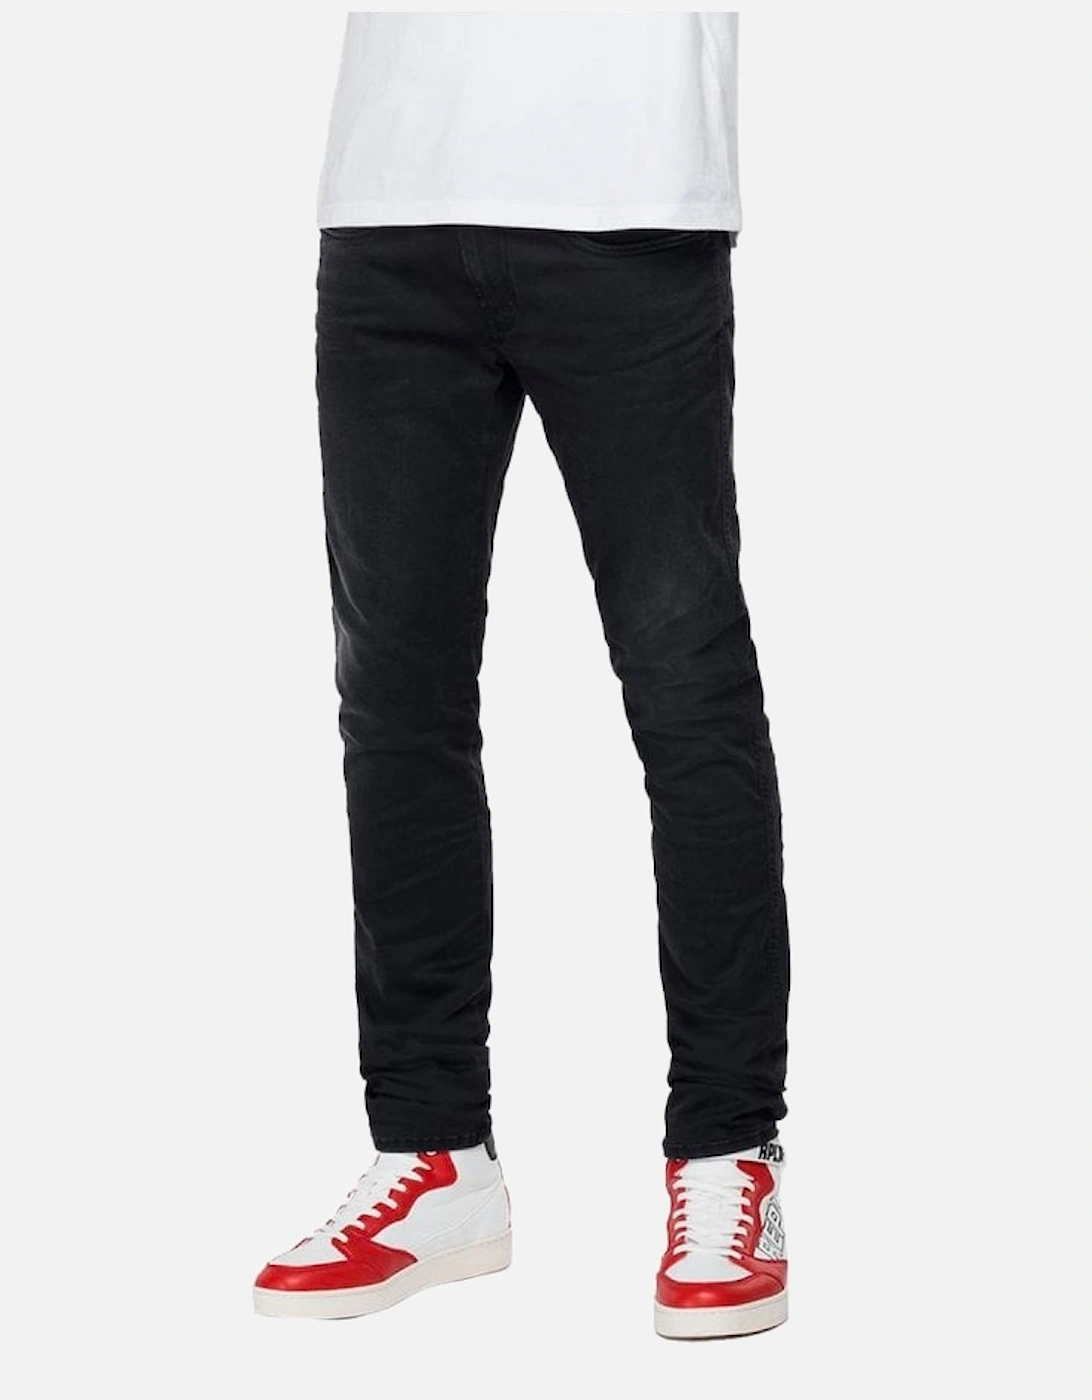 Hyperflex Mens X-lite Black Stretch Jeans 098, 6 of 5